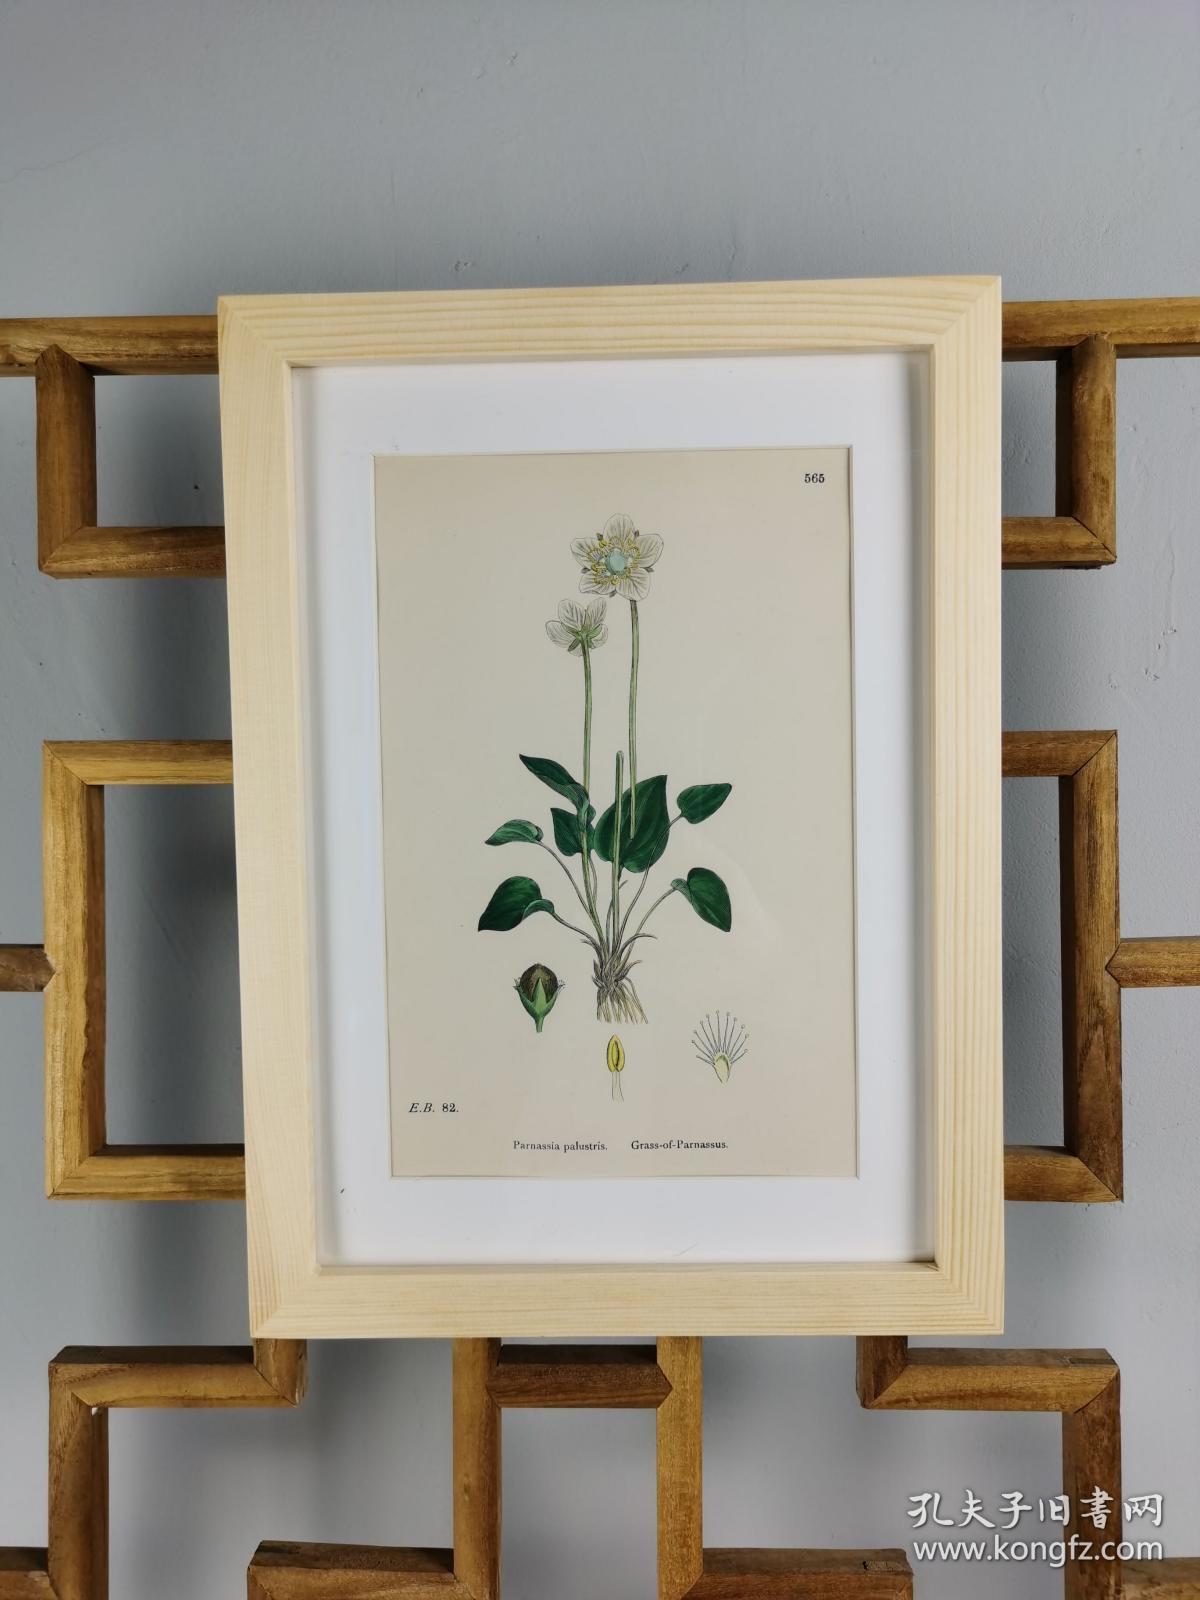 19世纪手工上色钢版画《英国植物花卉图谱565：虎耳草目--梅花草属--帕那色斯草（是北美南部的特有植物）》（Parnassia palustris，Grass-of-Parnassus）-- 来自19世纪英国著名植物学家John T. Boswell的文献，插图出自英国画家John Edward Sowerby，大英博物馆 -- 纸张尺寸25.5*17.5厘米 -- 手工上色非常精美
老画新框